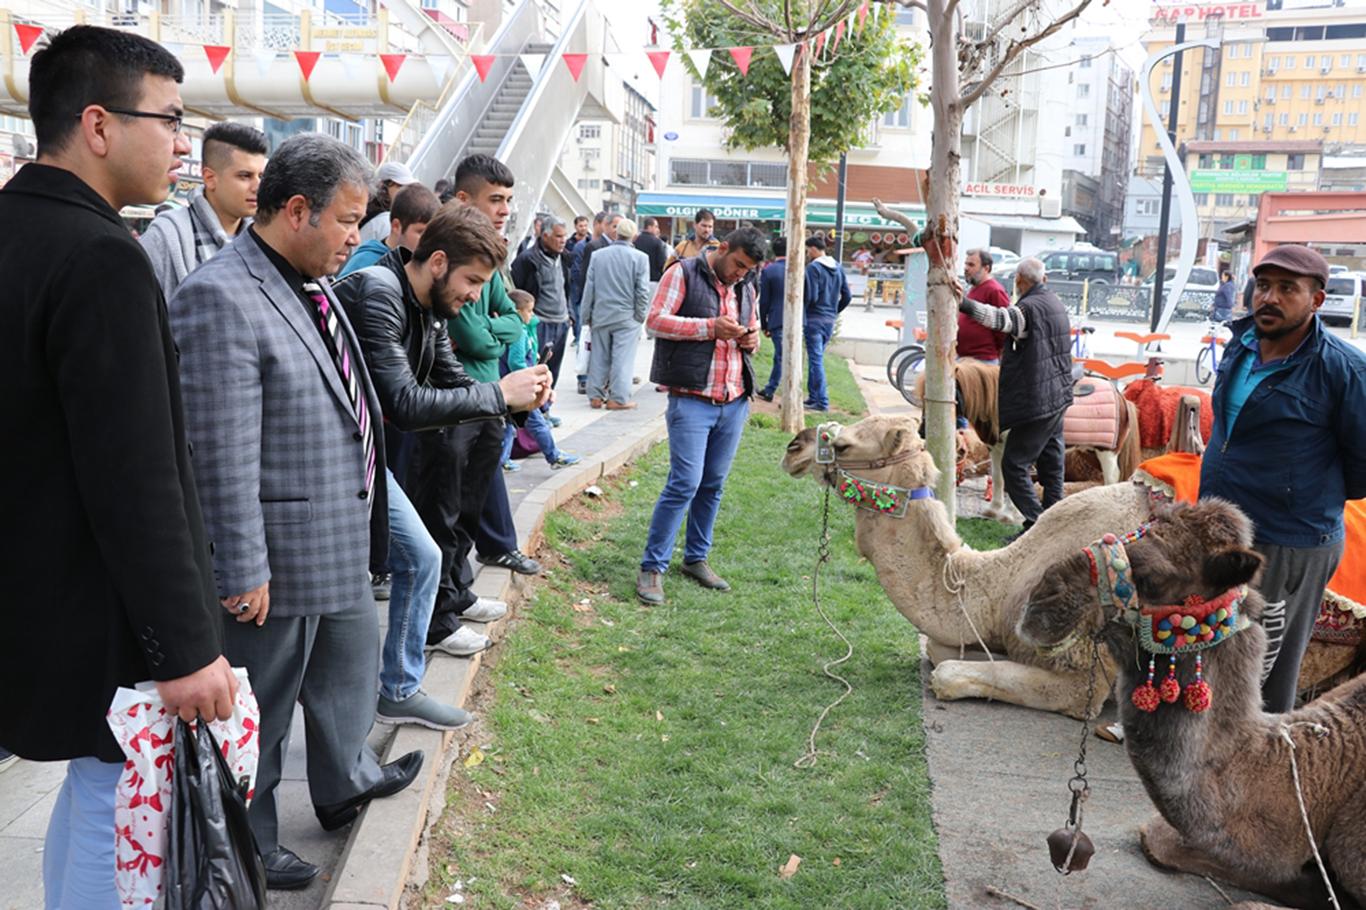 Şehir merkezine getirilen develer ilgi odağı oldu